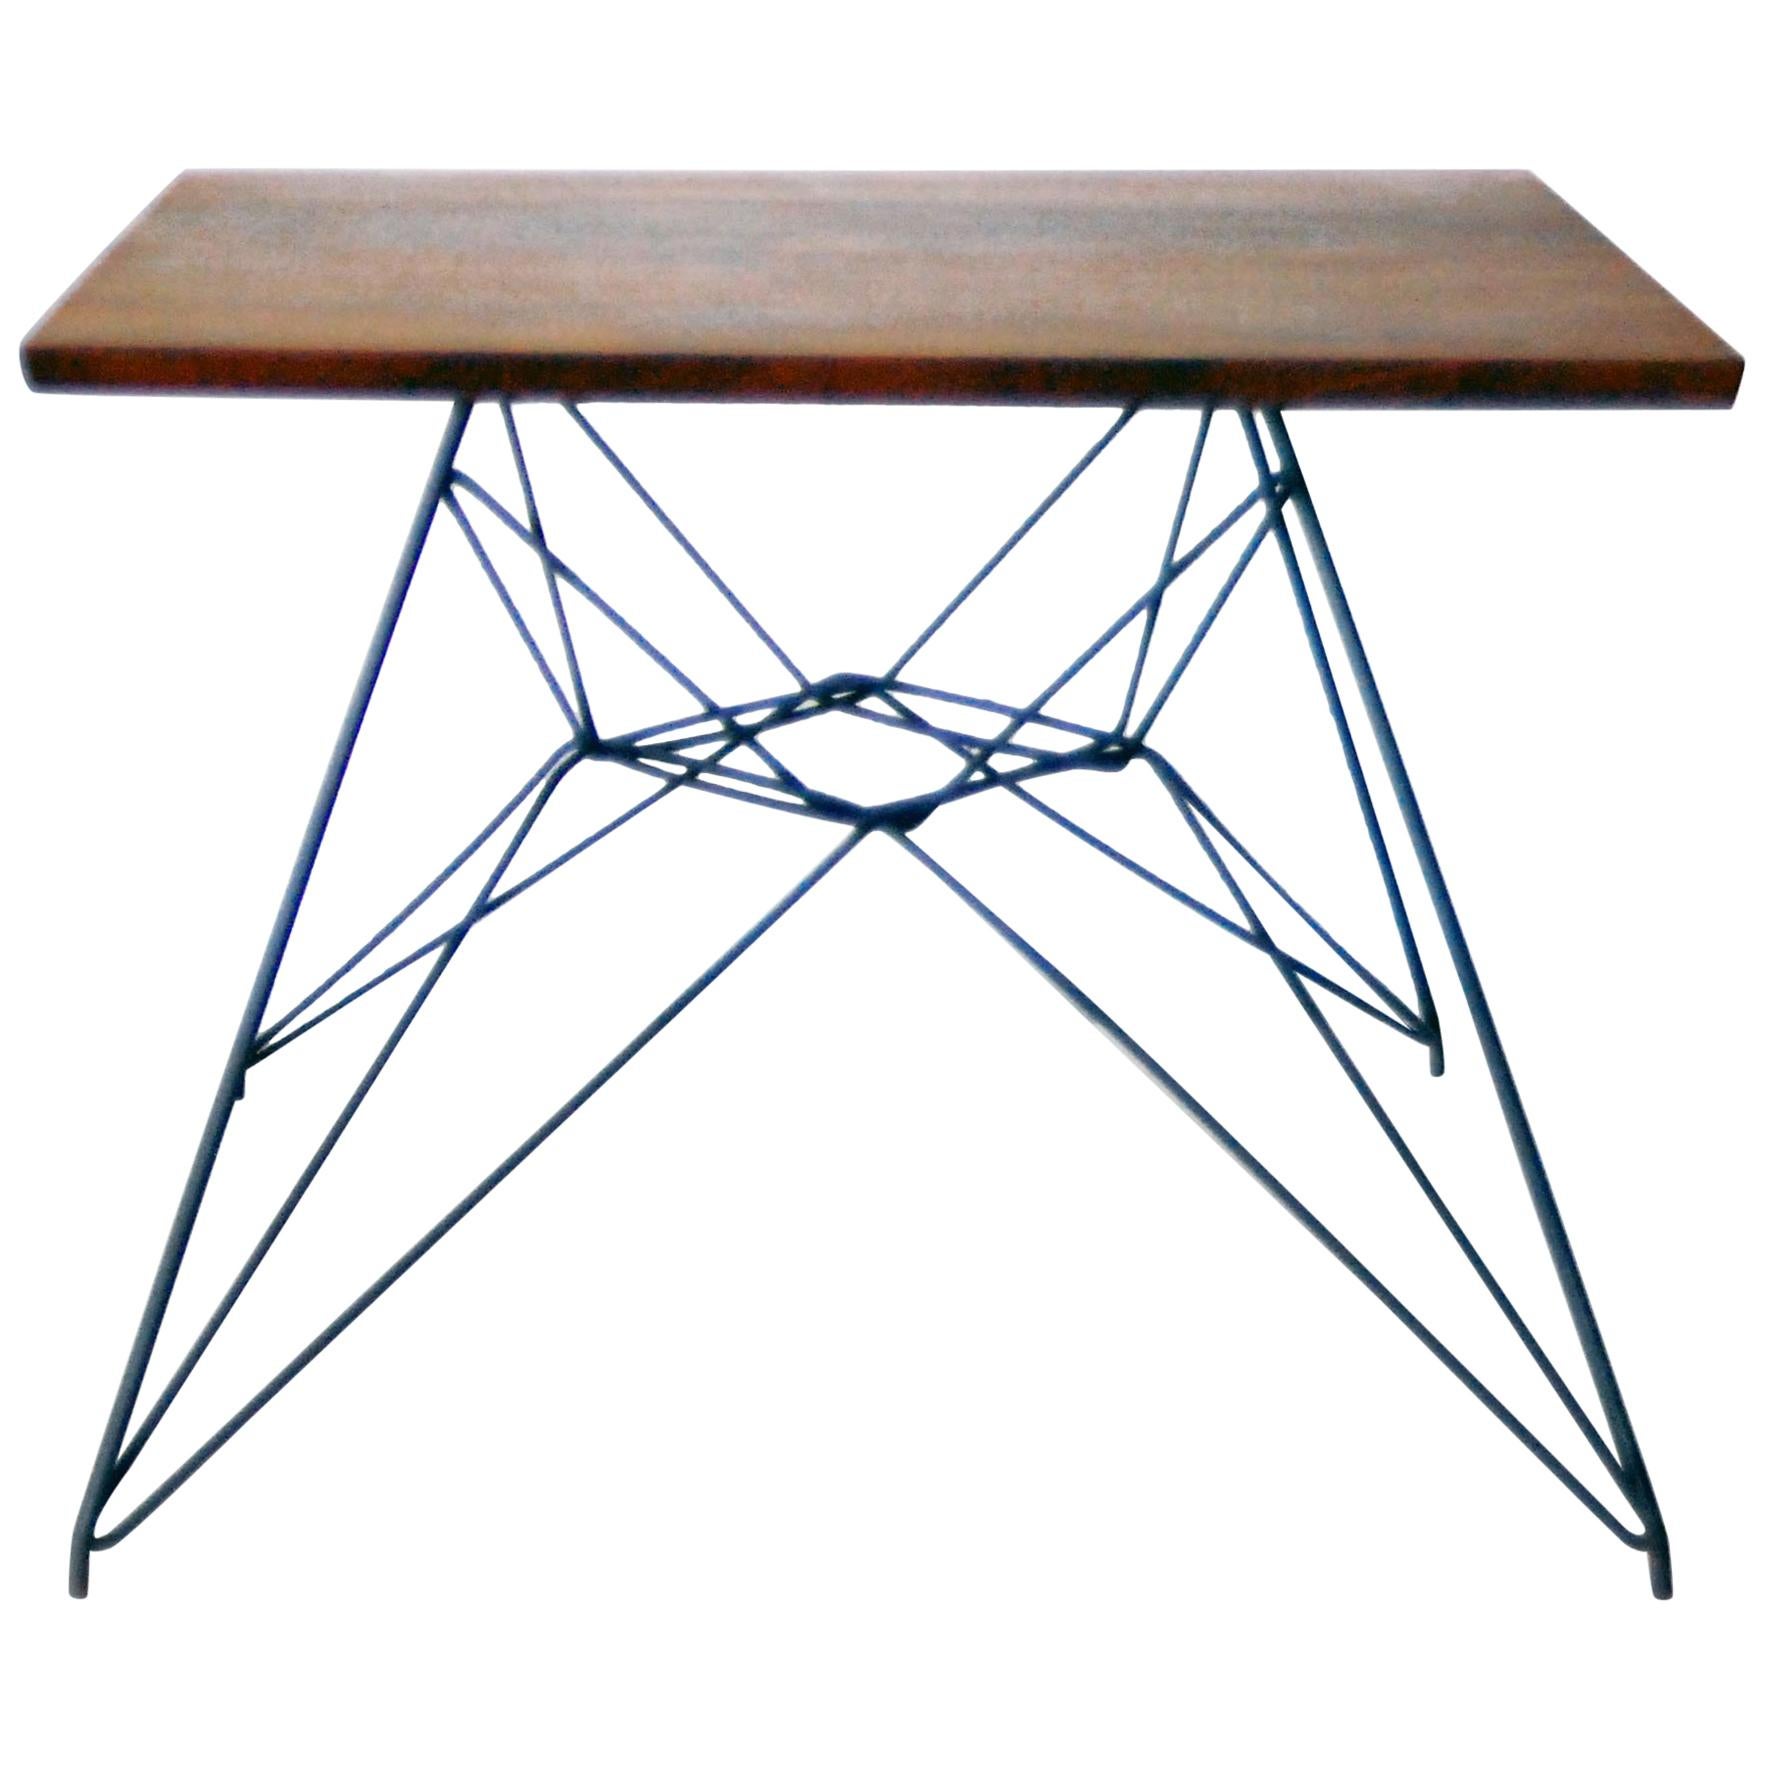 Early Eames Eiffel Base Prototype Table